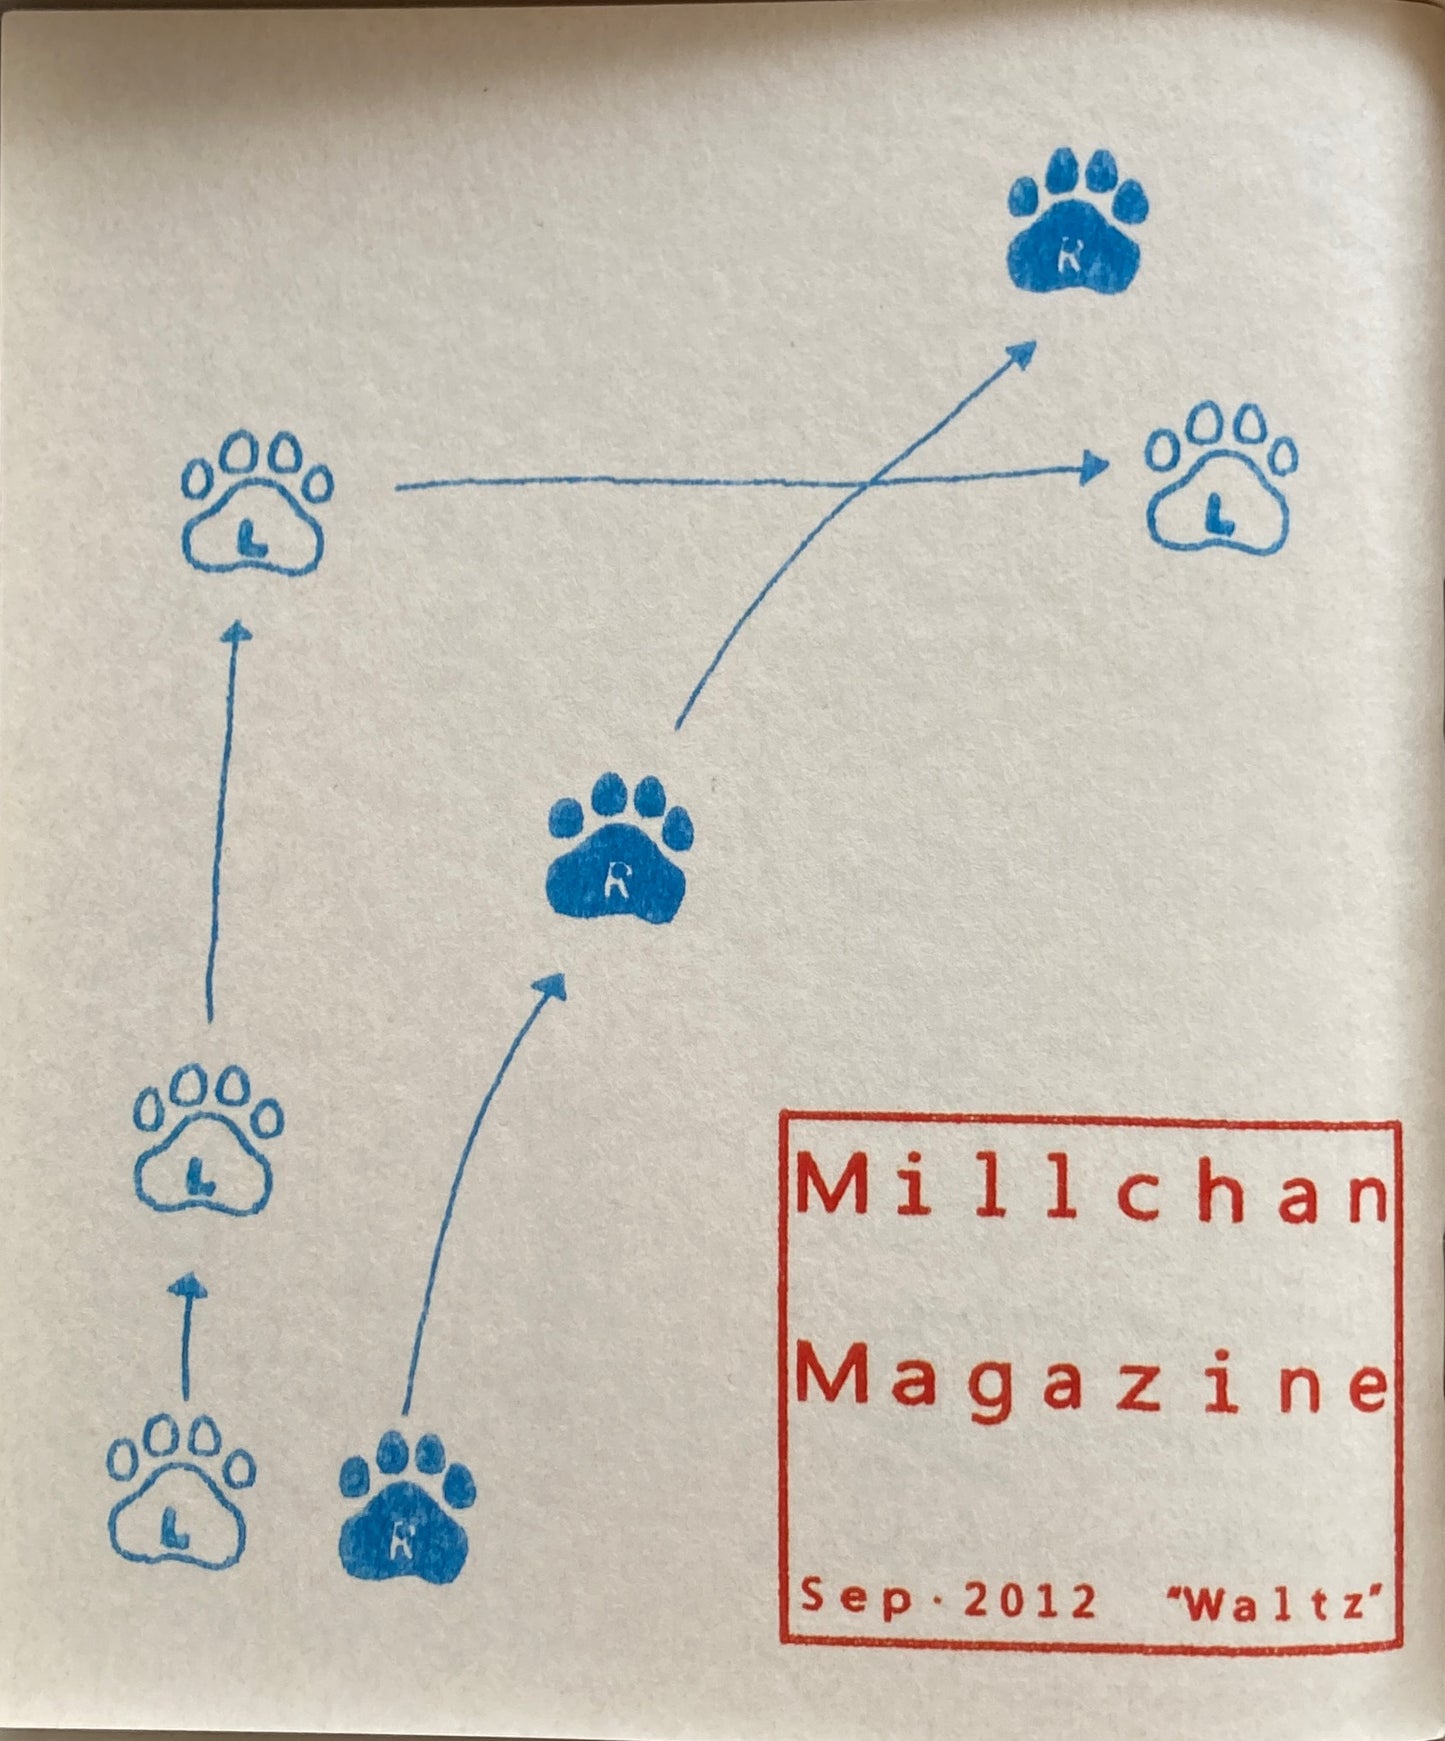 Millchan Magazine Sep.2012　"Walts"　カニエ・ナハ